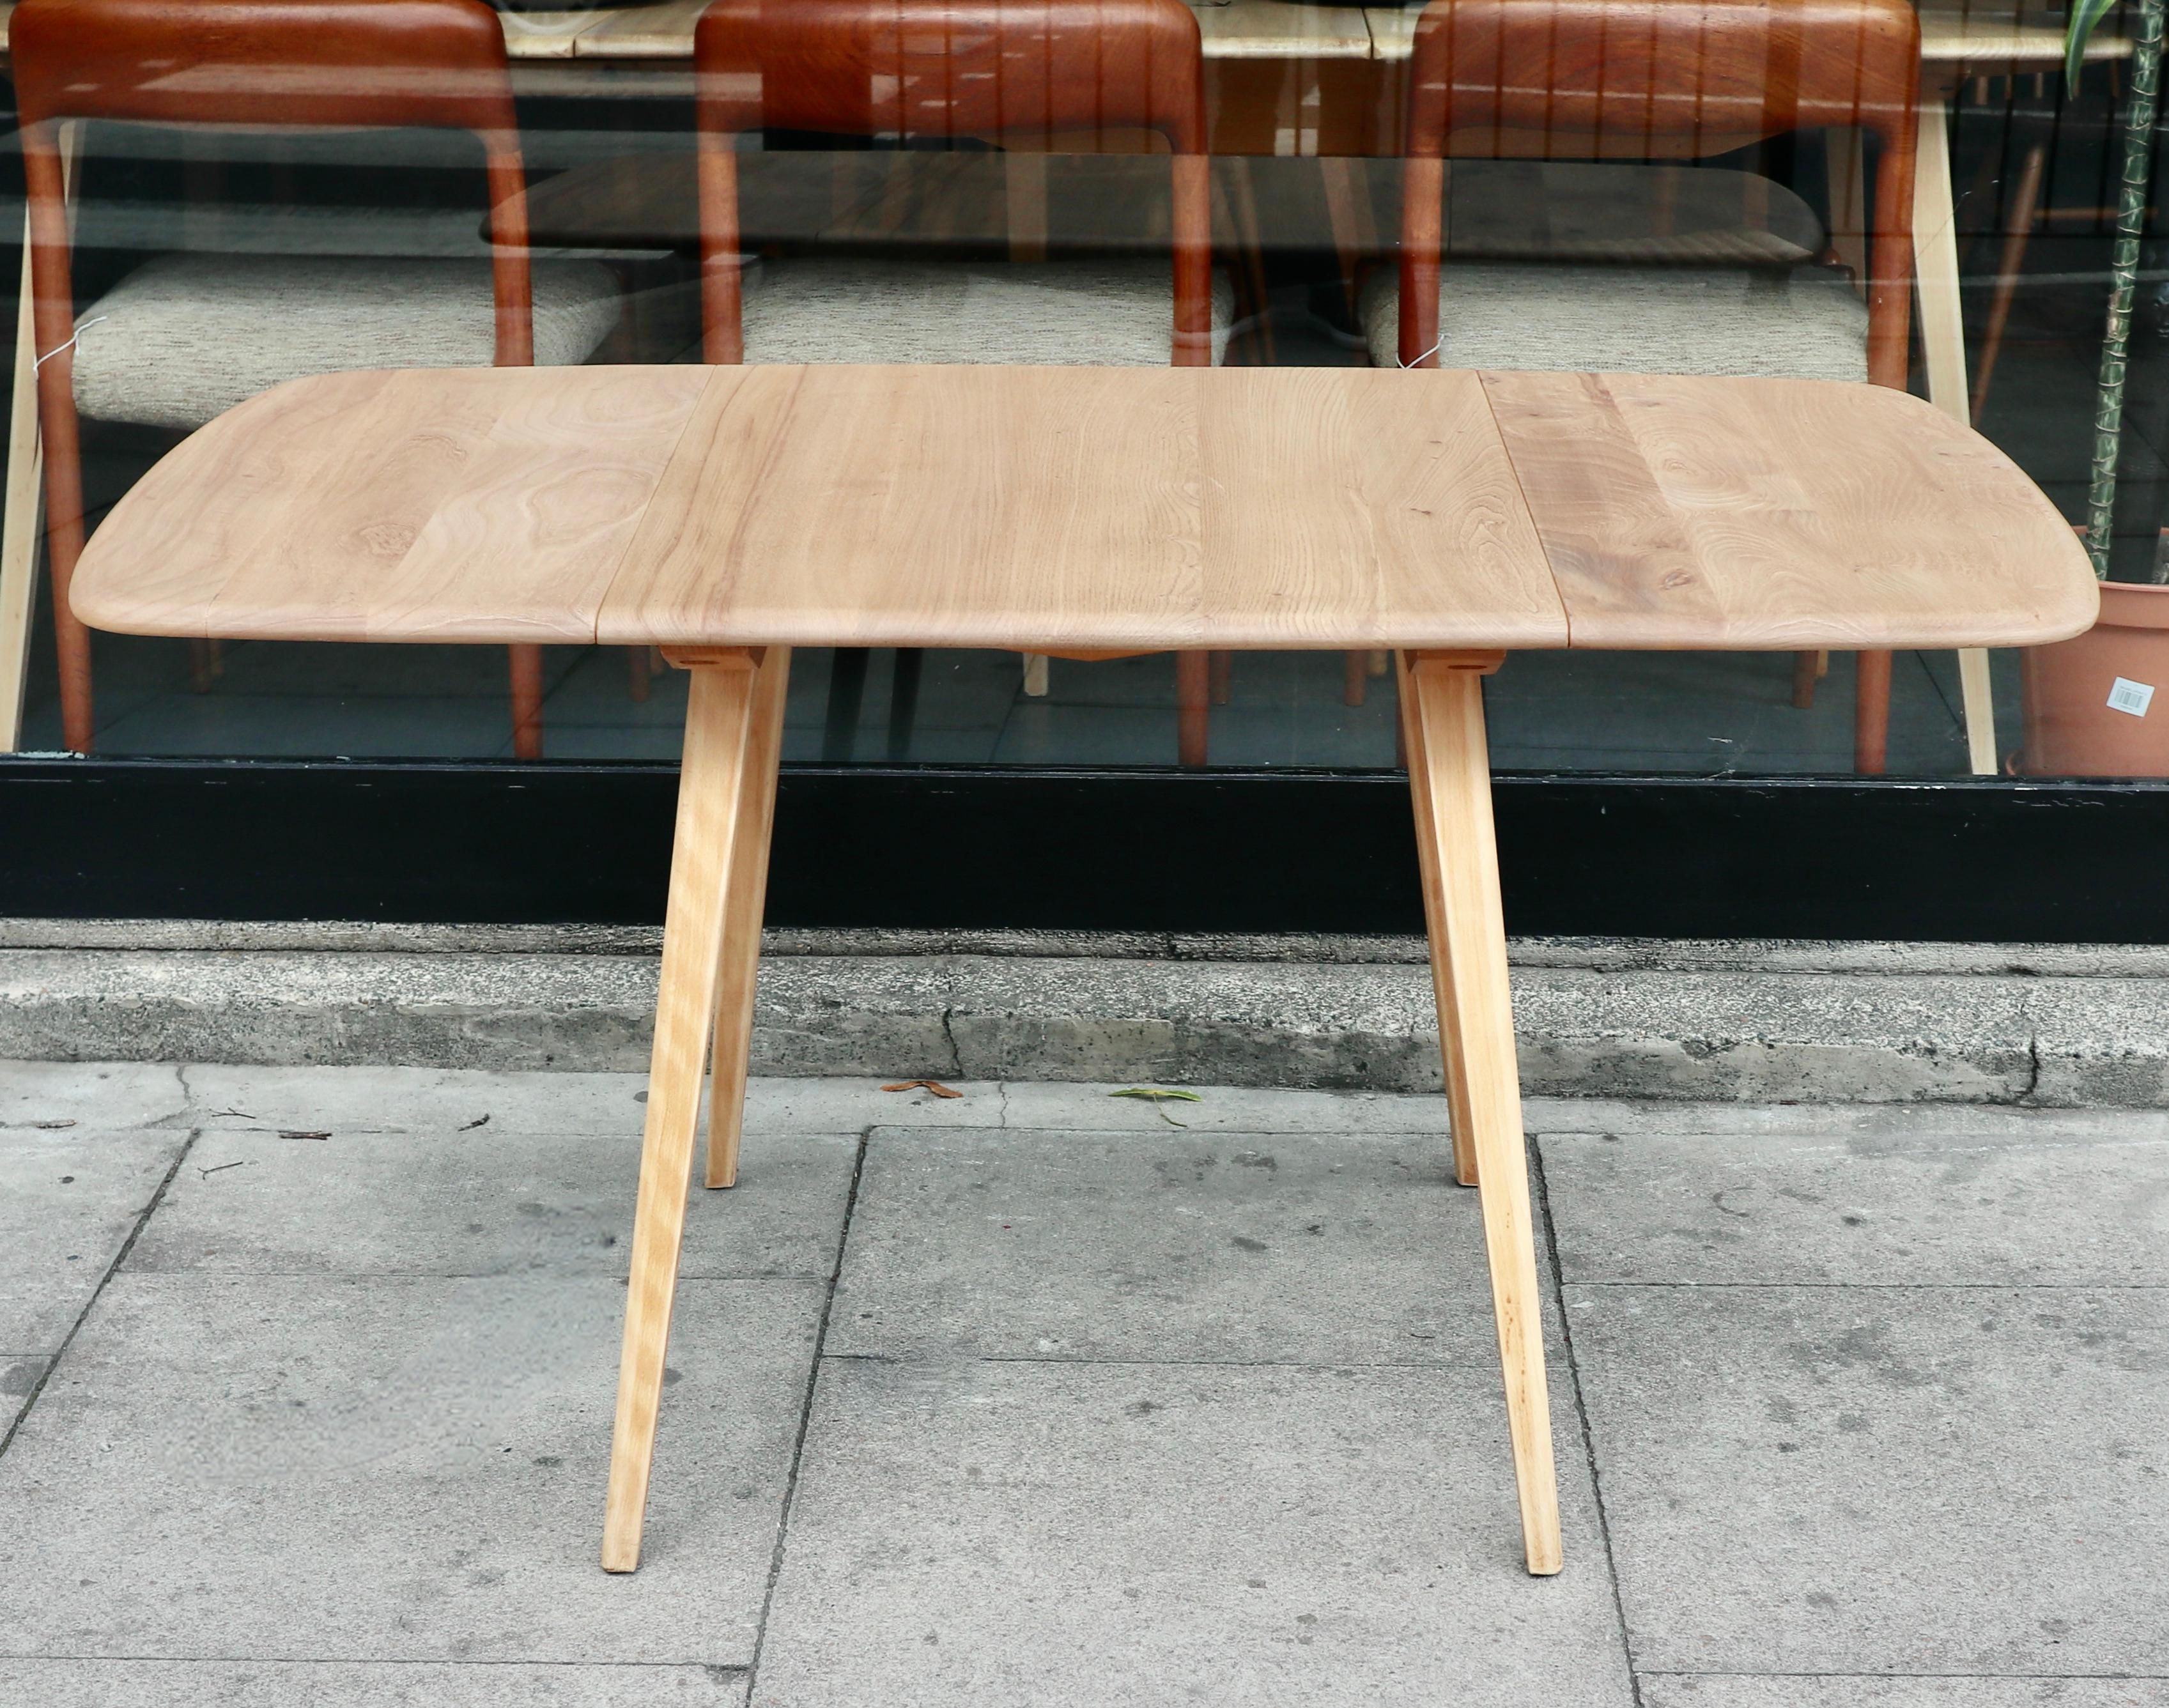 Ein rechteckiger Esstisch mit Klappe aus den 1960er Jahren von Ercol.  Dieser Tisch hat eine Platte aus massivem Ulmenholz und ein vierbeiniges Untergestell aus massiver Buche. Er hat zwei Klapptische und ist in einem sehr guten Vintage-Zustand, da